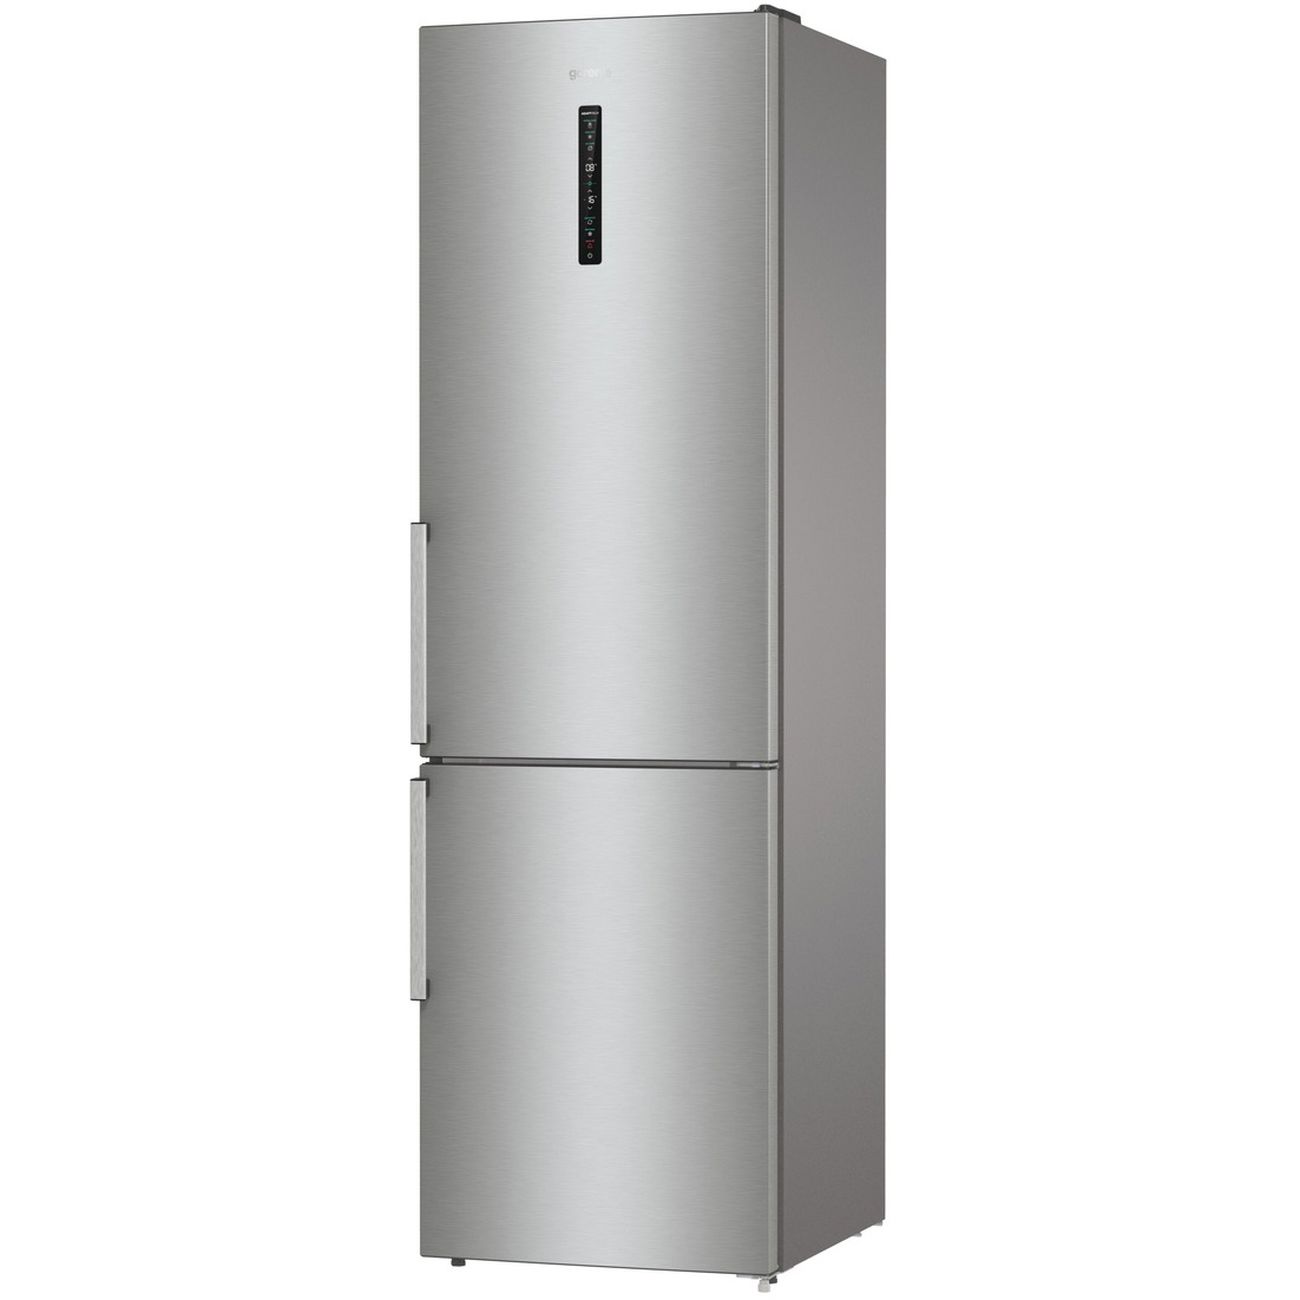 Двухкамерный холодильник lg no frost. Холодильник LG ga-b499ymqz. Холодильник LG ga-b499ymqz серебристый. LG ga-b 499 YVQZ холодильник. LG холодильник LG ga-b419sdjl.